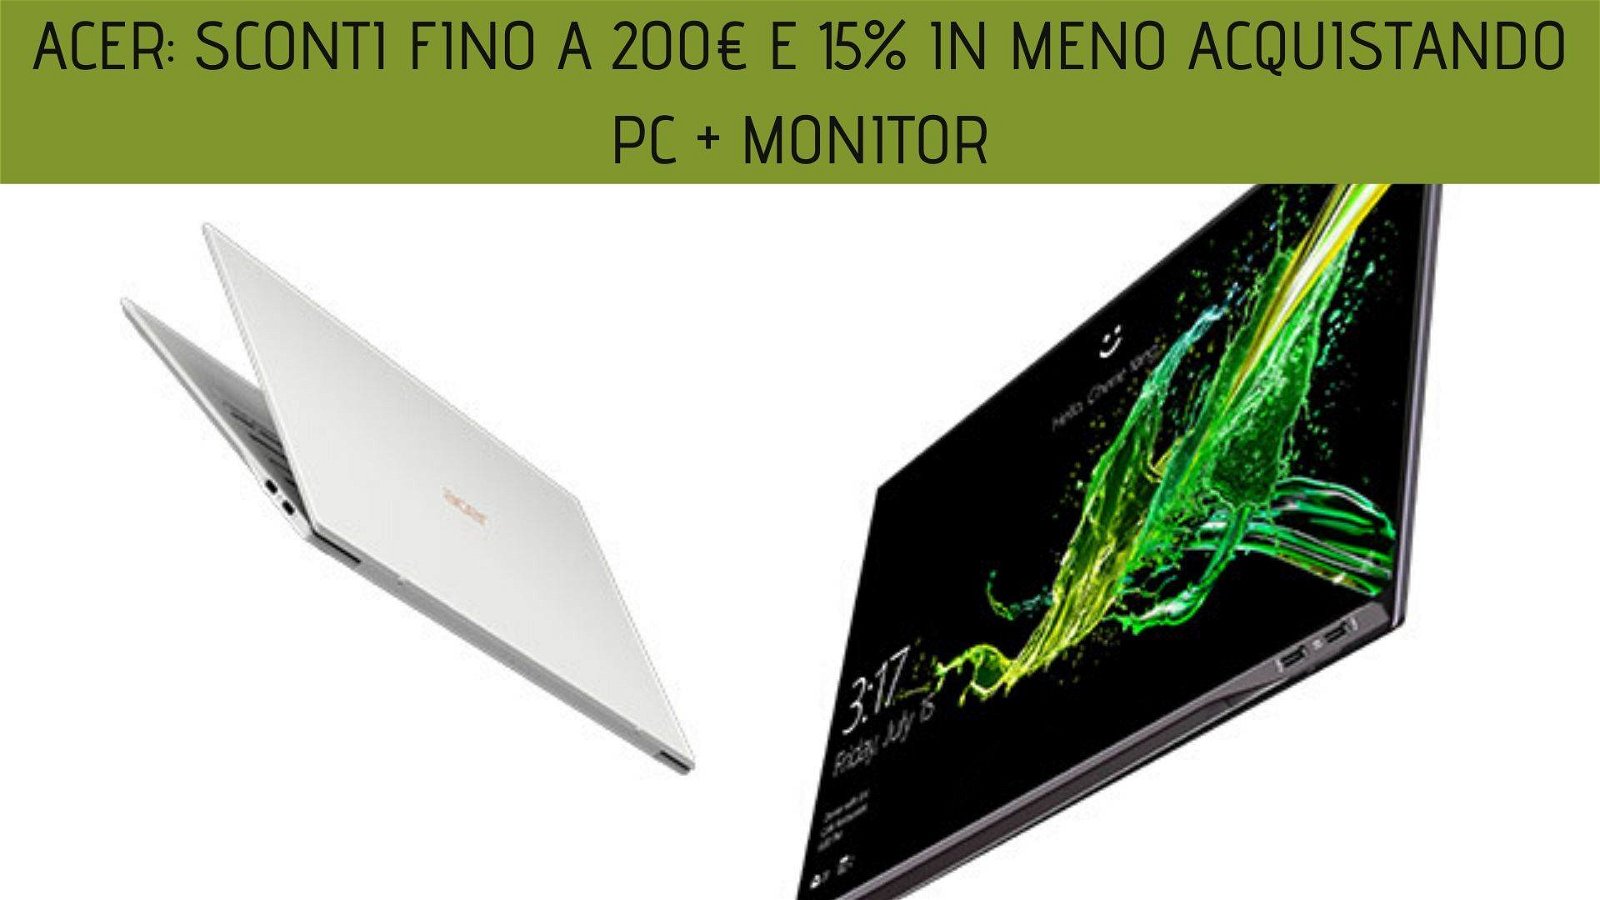 Immagine di Acer: sconti fino a 200€ e 15% in meno acquistando un monitor e un PC